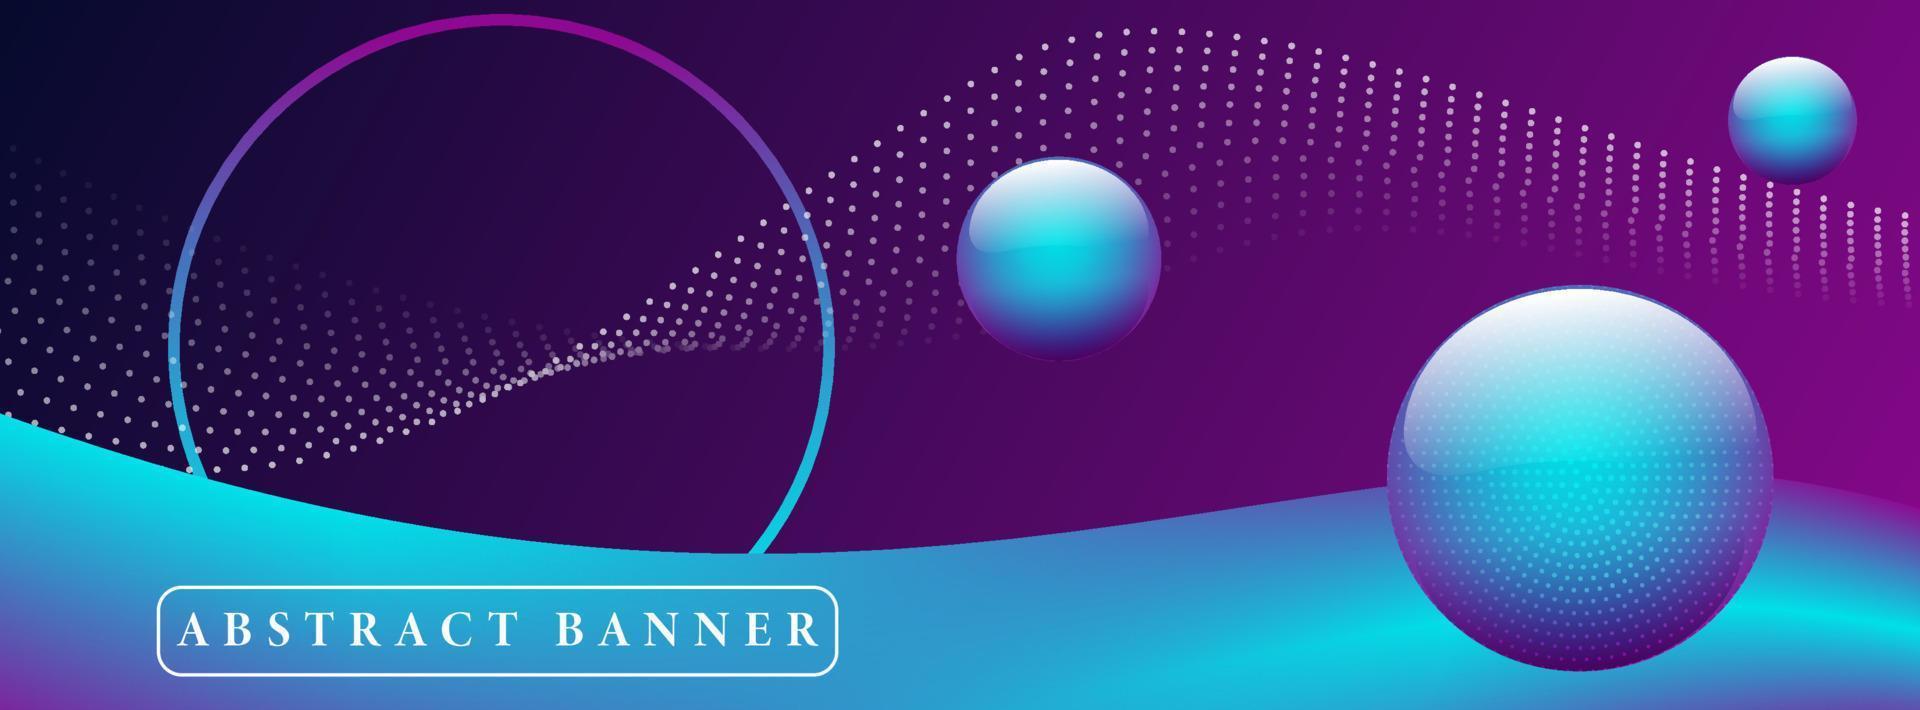 brede abstracte banner gemaakt met 3D-golf 3D-ballen en cirkelvorm met stardust-golf op de achtergrond vector